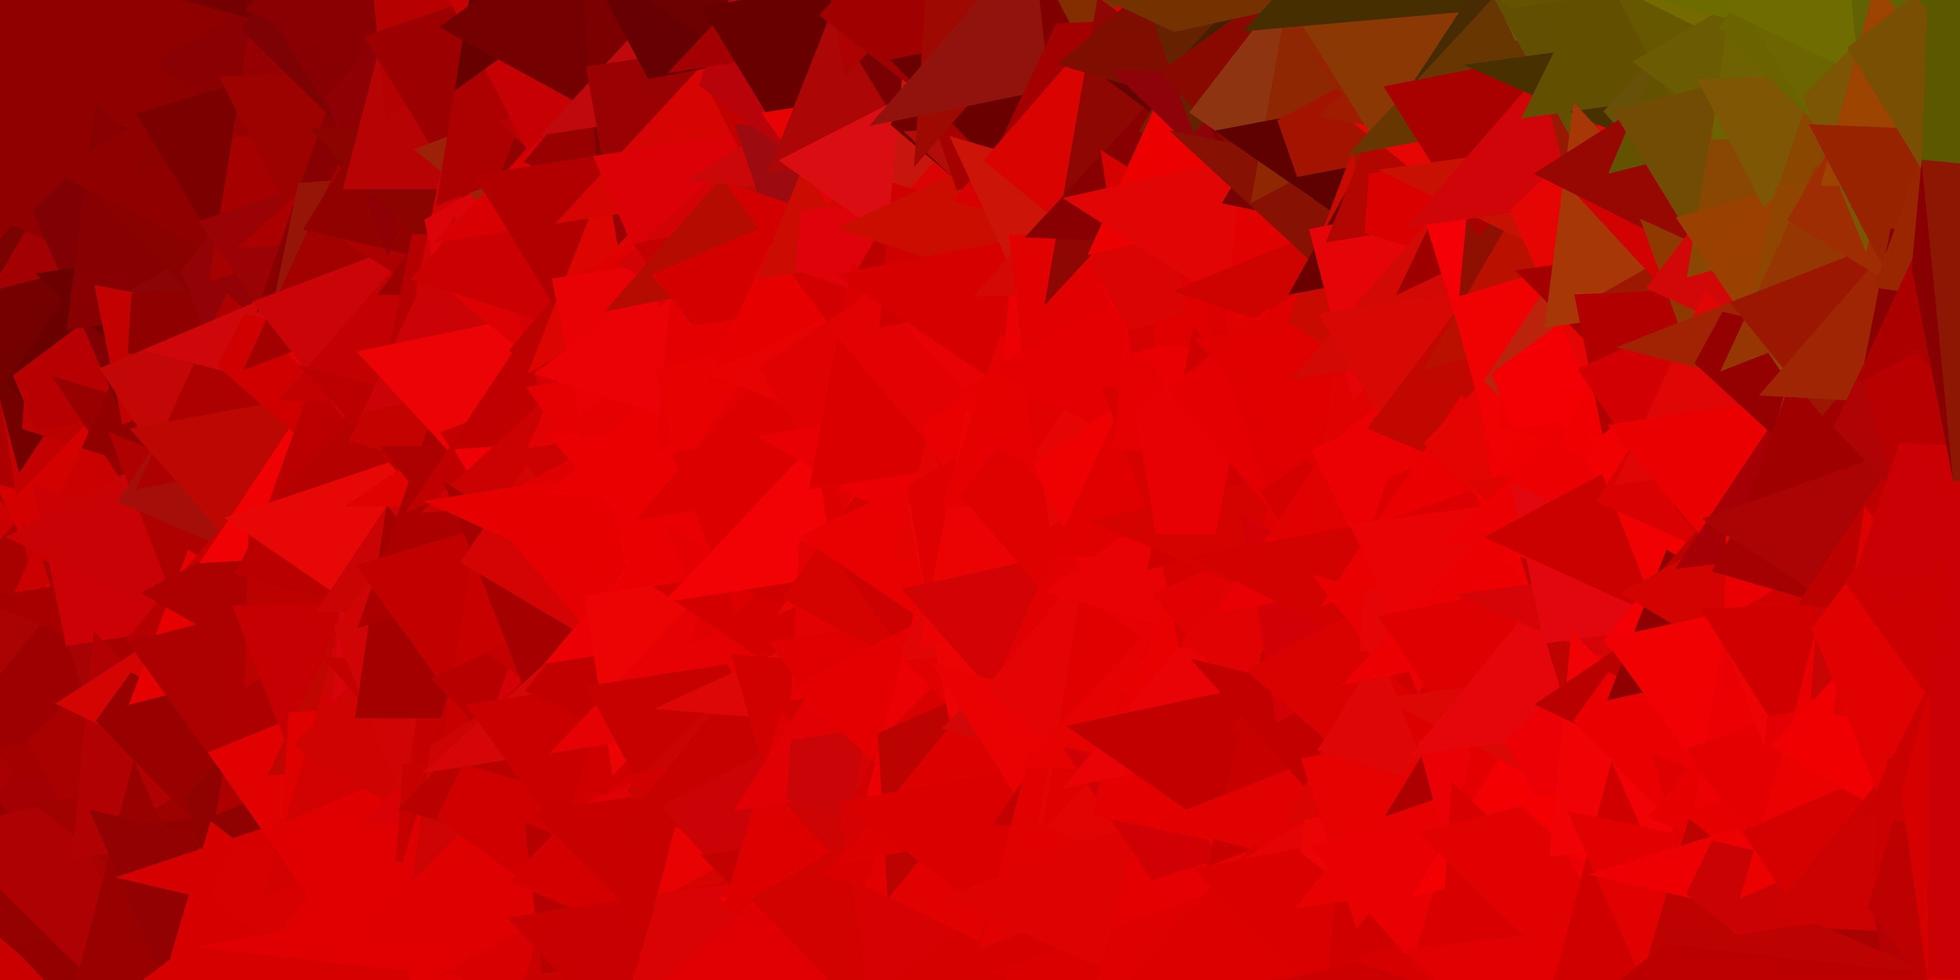 donkergroen, rood vector driehoek mozaïek sjabloon.